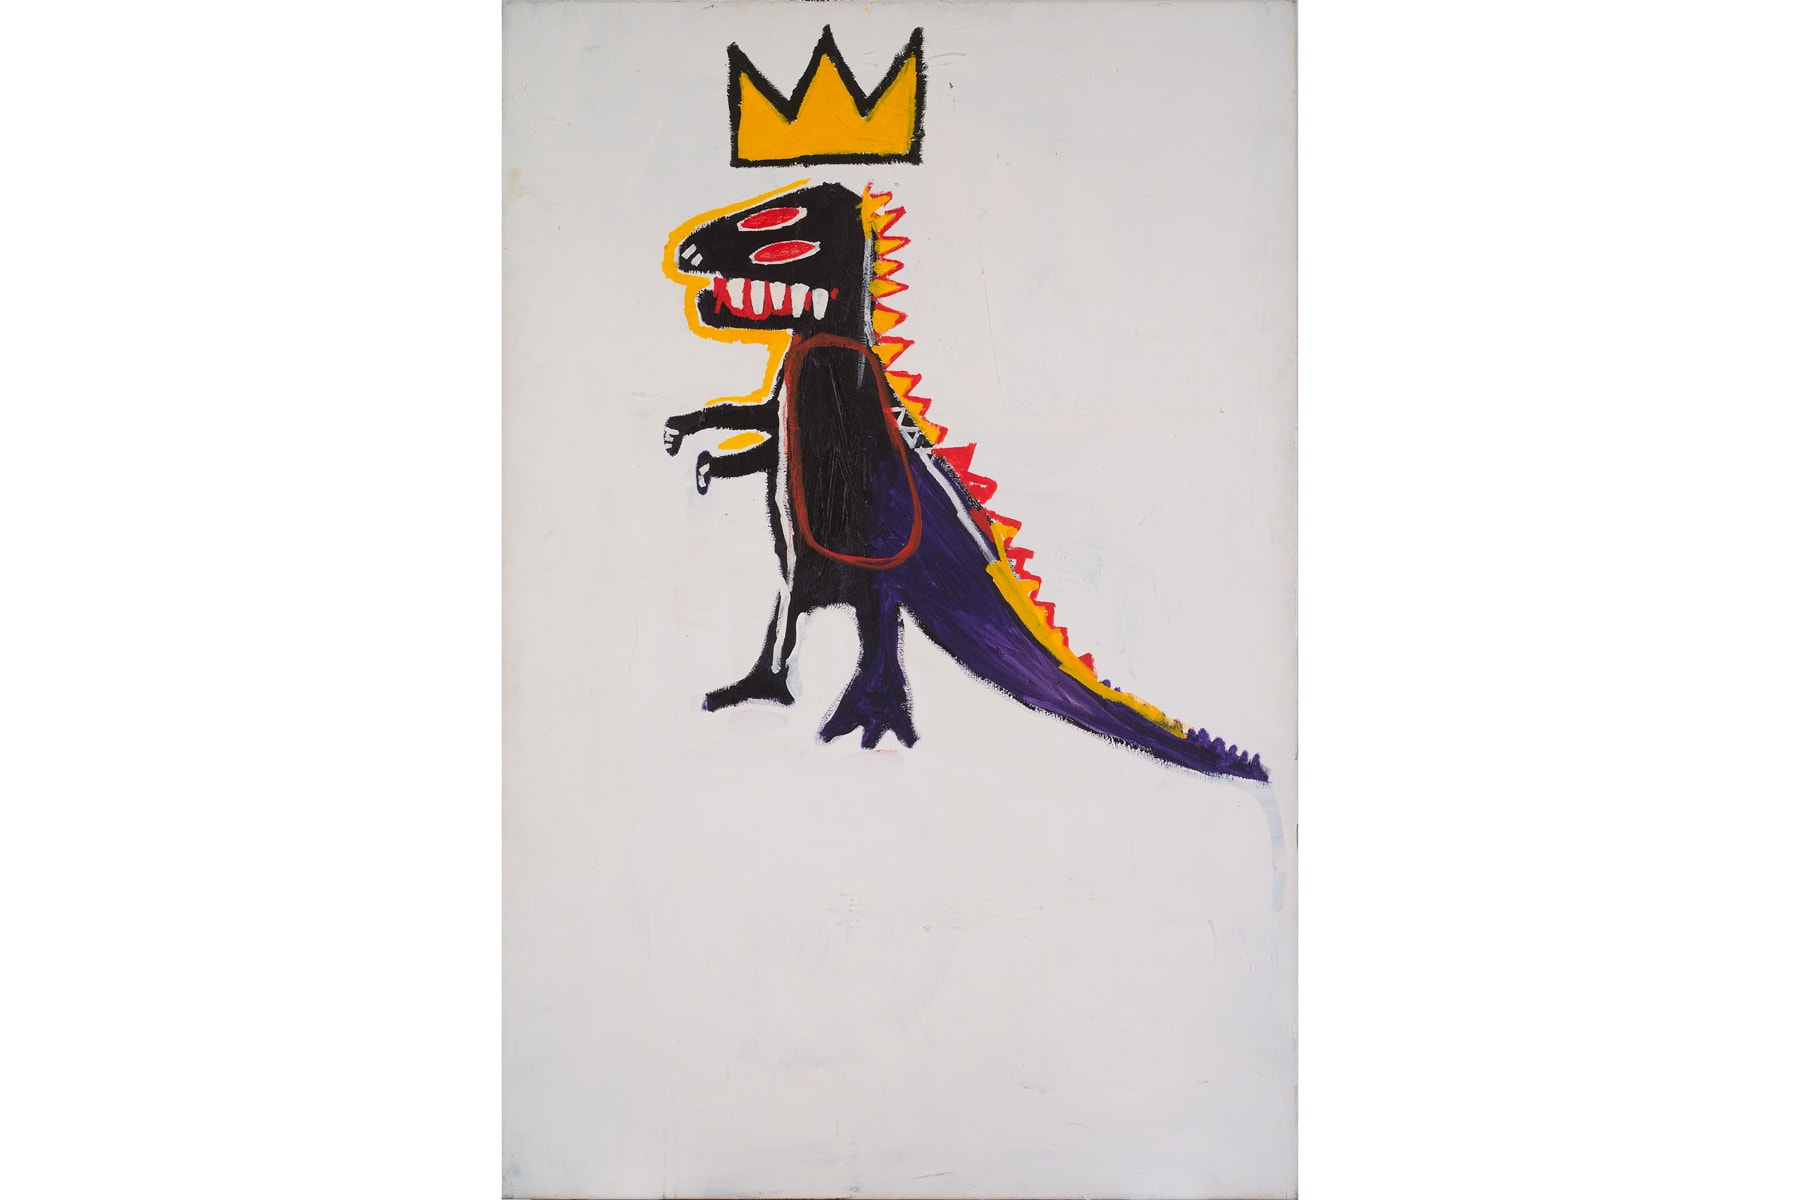 fondation louis vuitton jean michel basquiat egon schiele retrospective exhibitions shows art artworks paintings